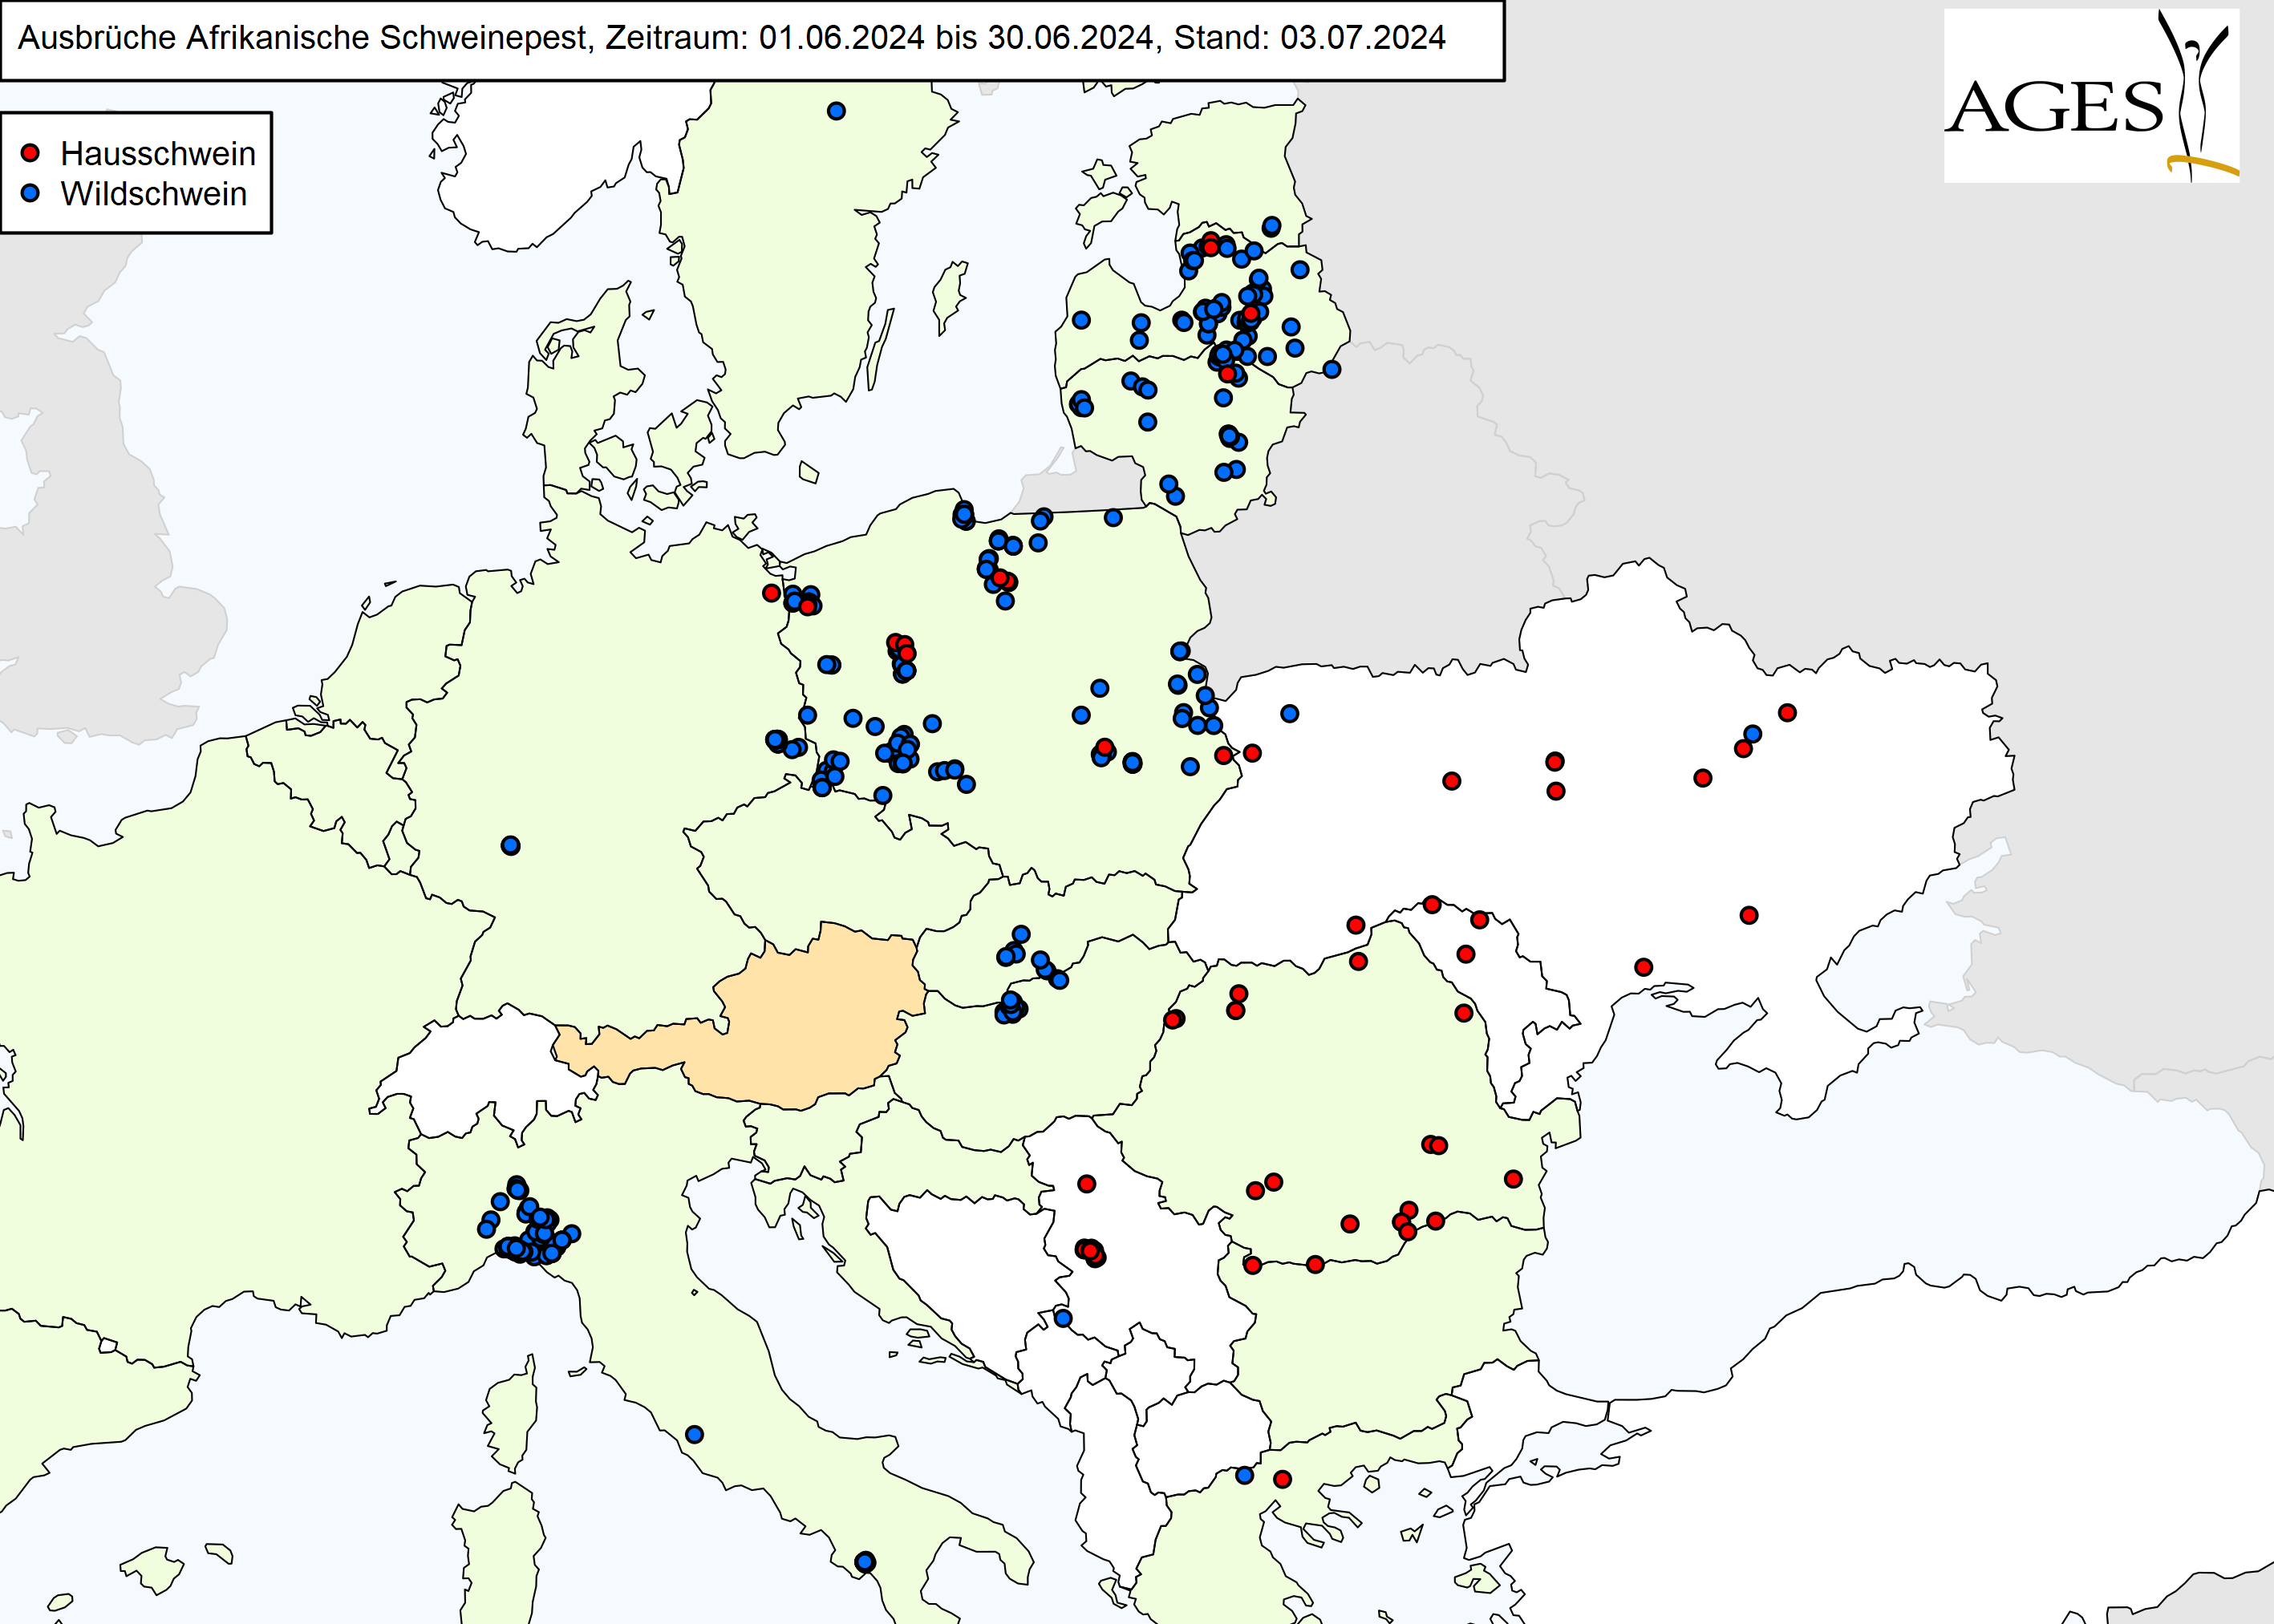 Europakarte zu ASP-Ausbrüche wie in "Situation in Europa" beschrieben.